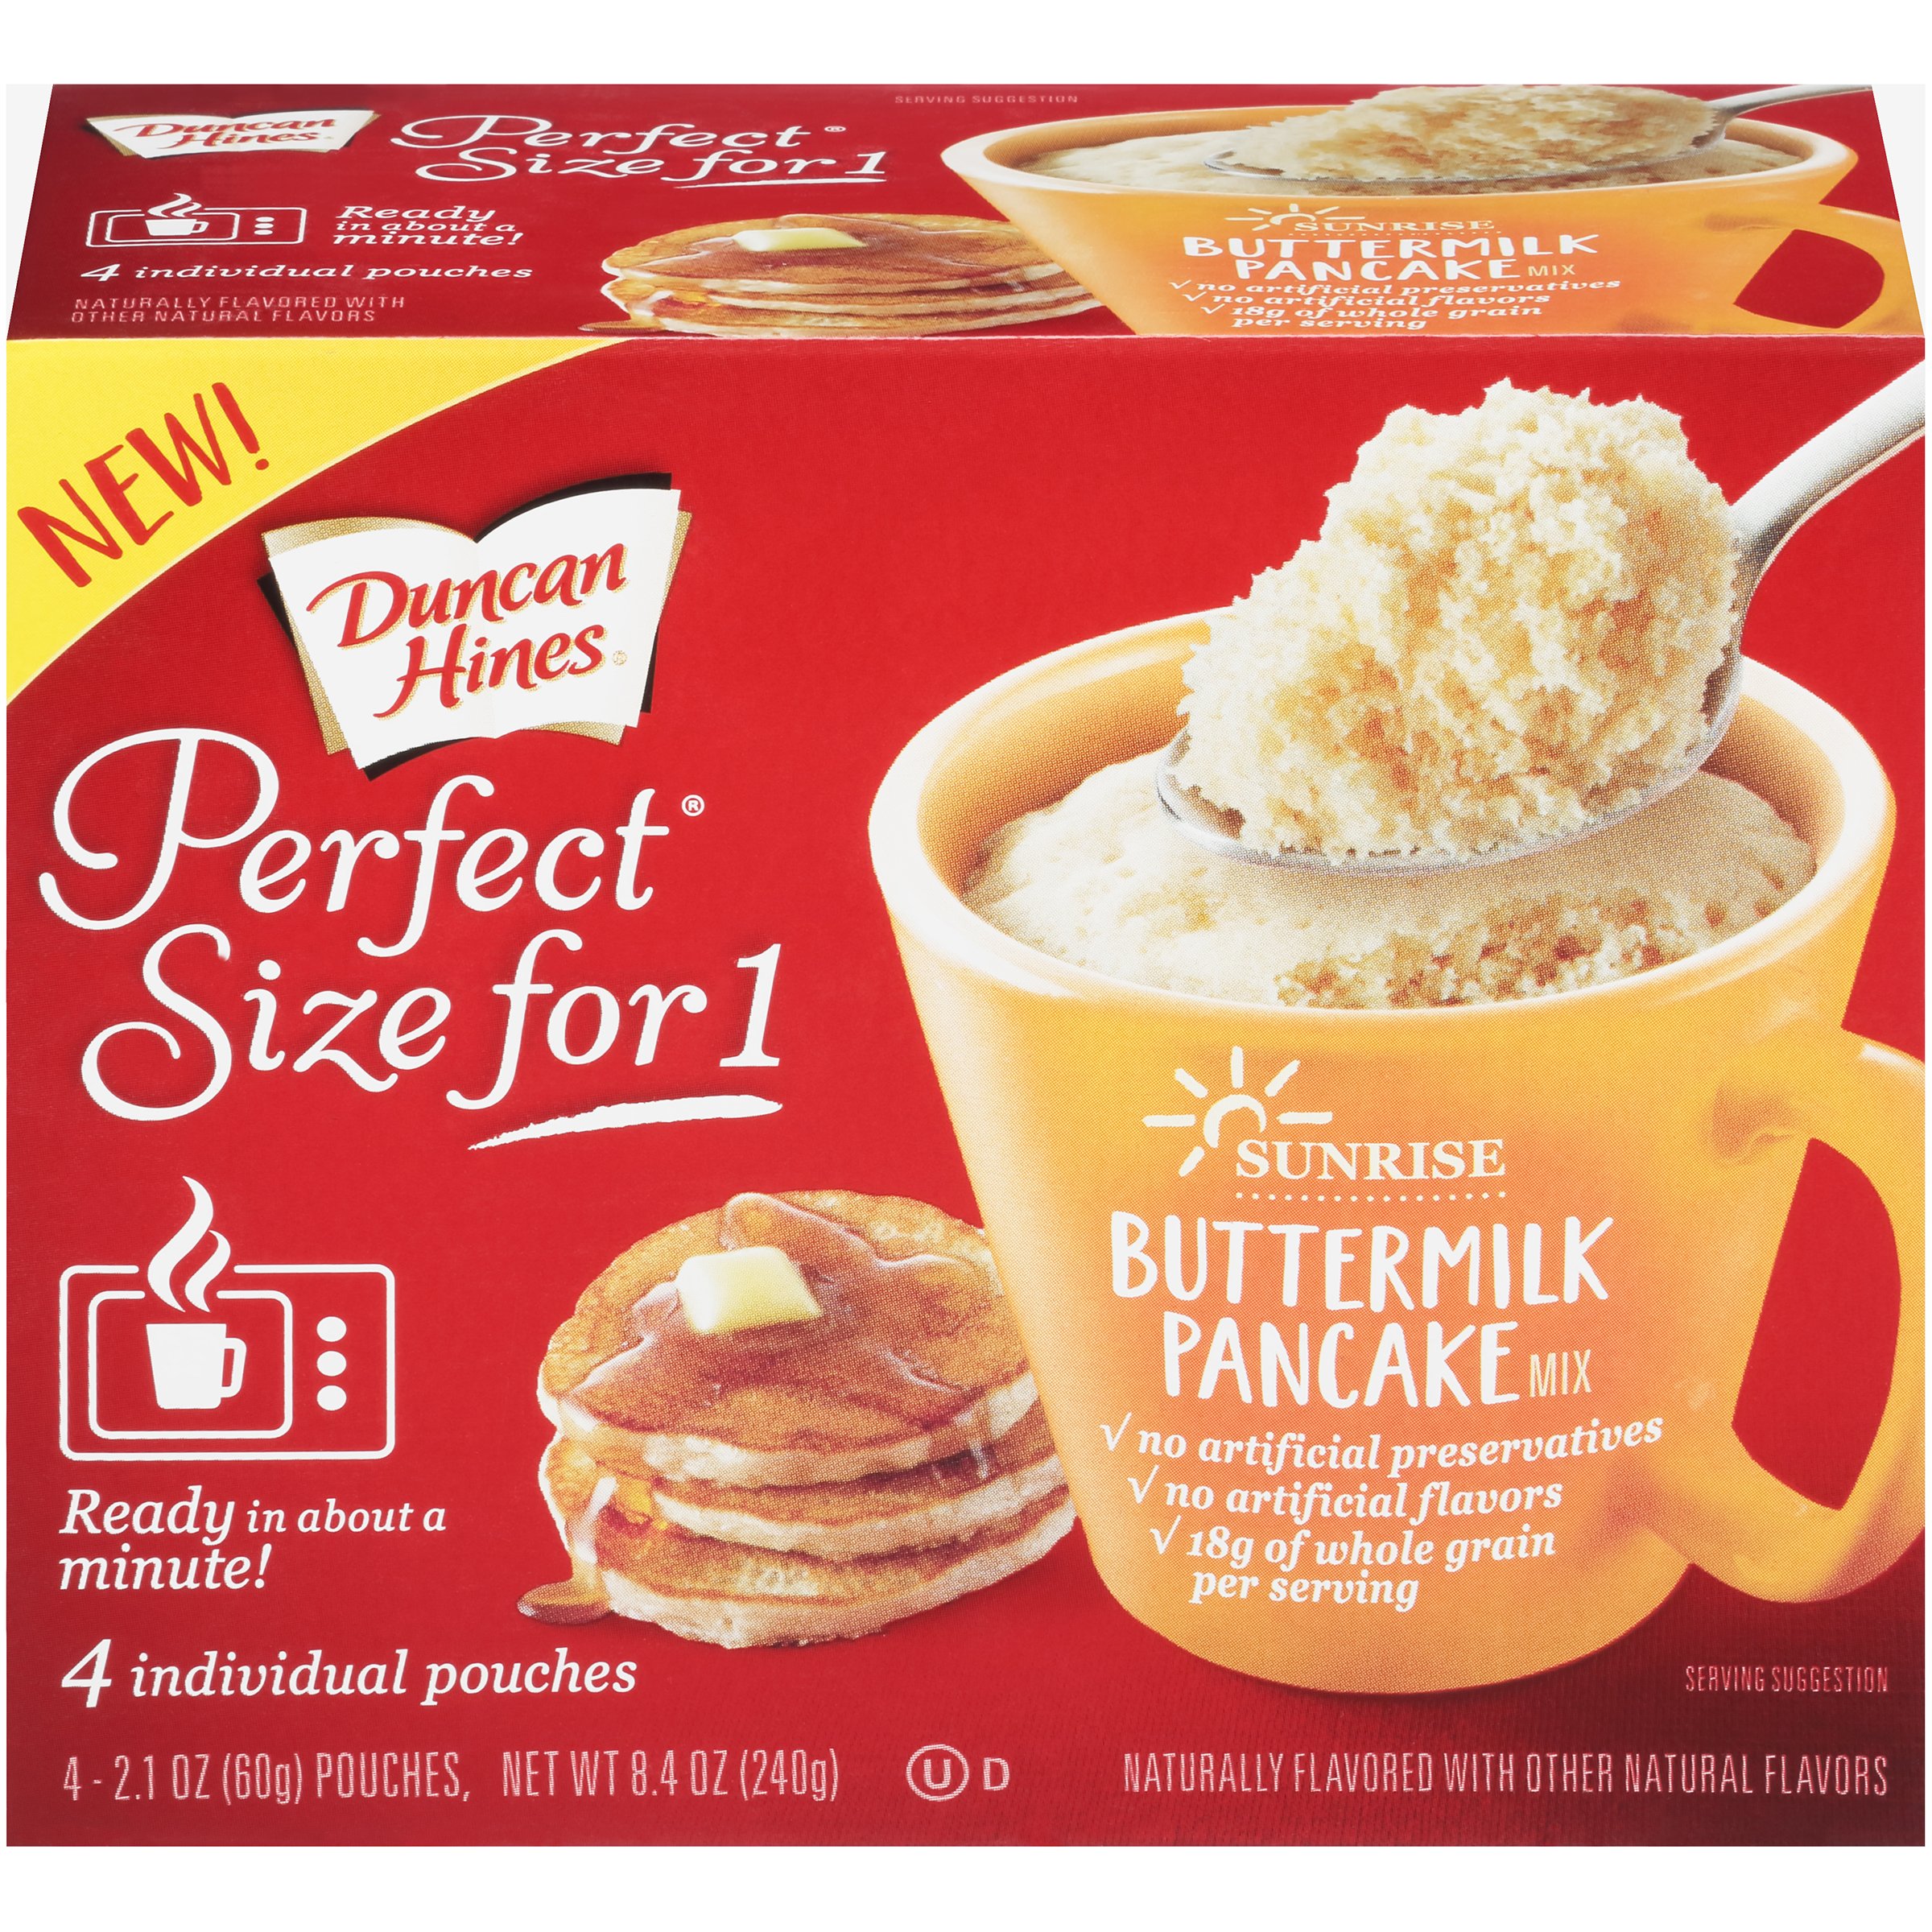 betty crocker buttermilk pancake mix instructions